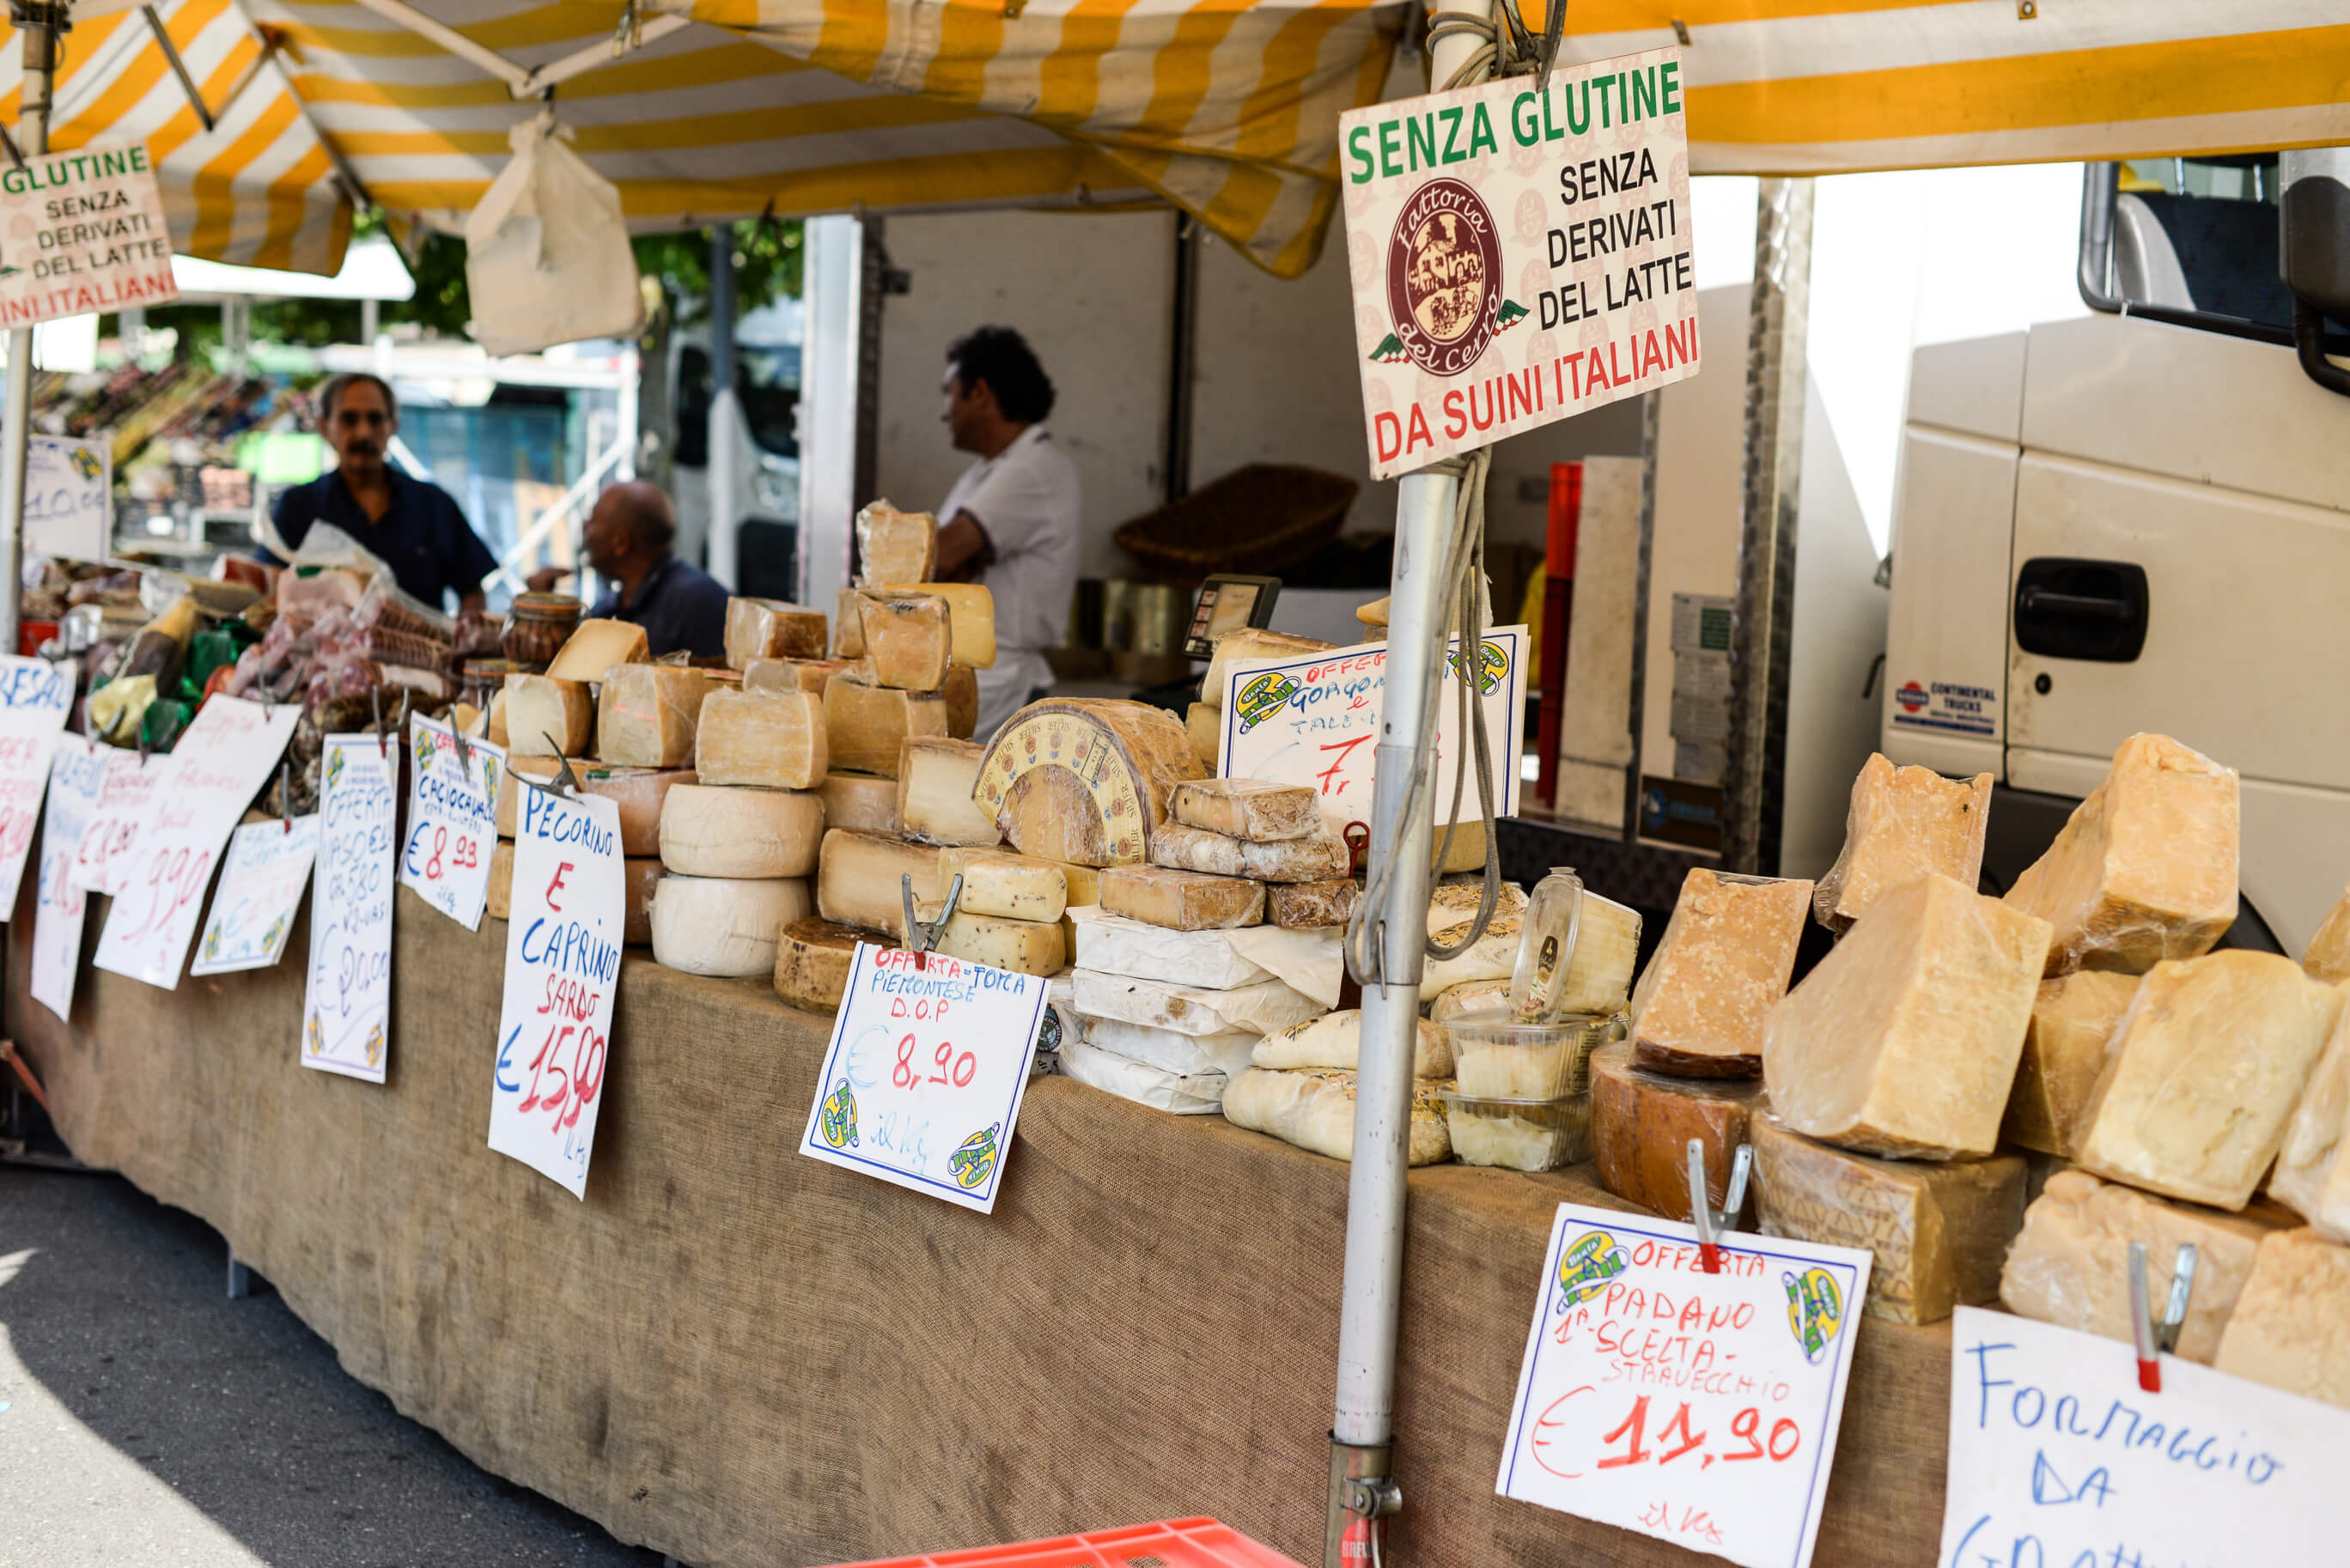 Italian Market